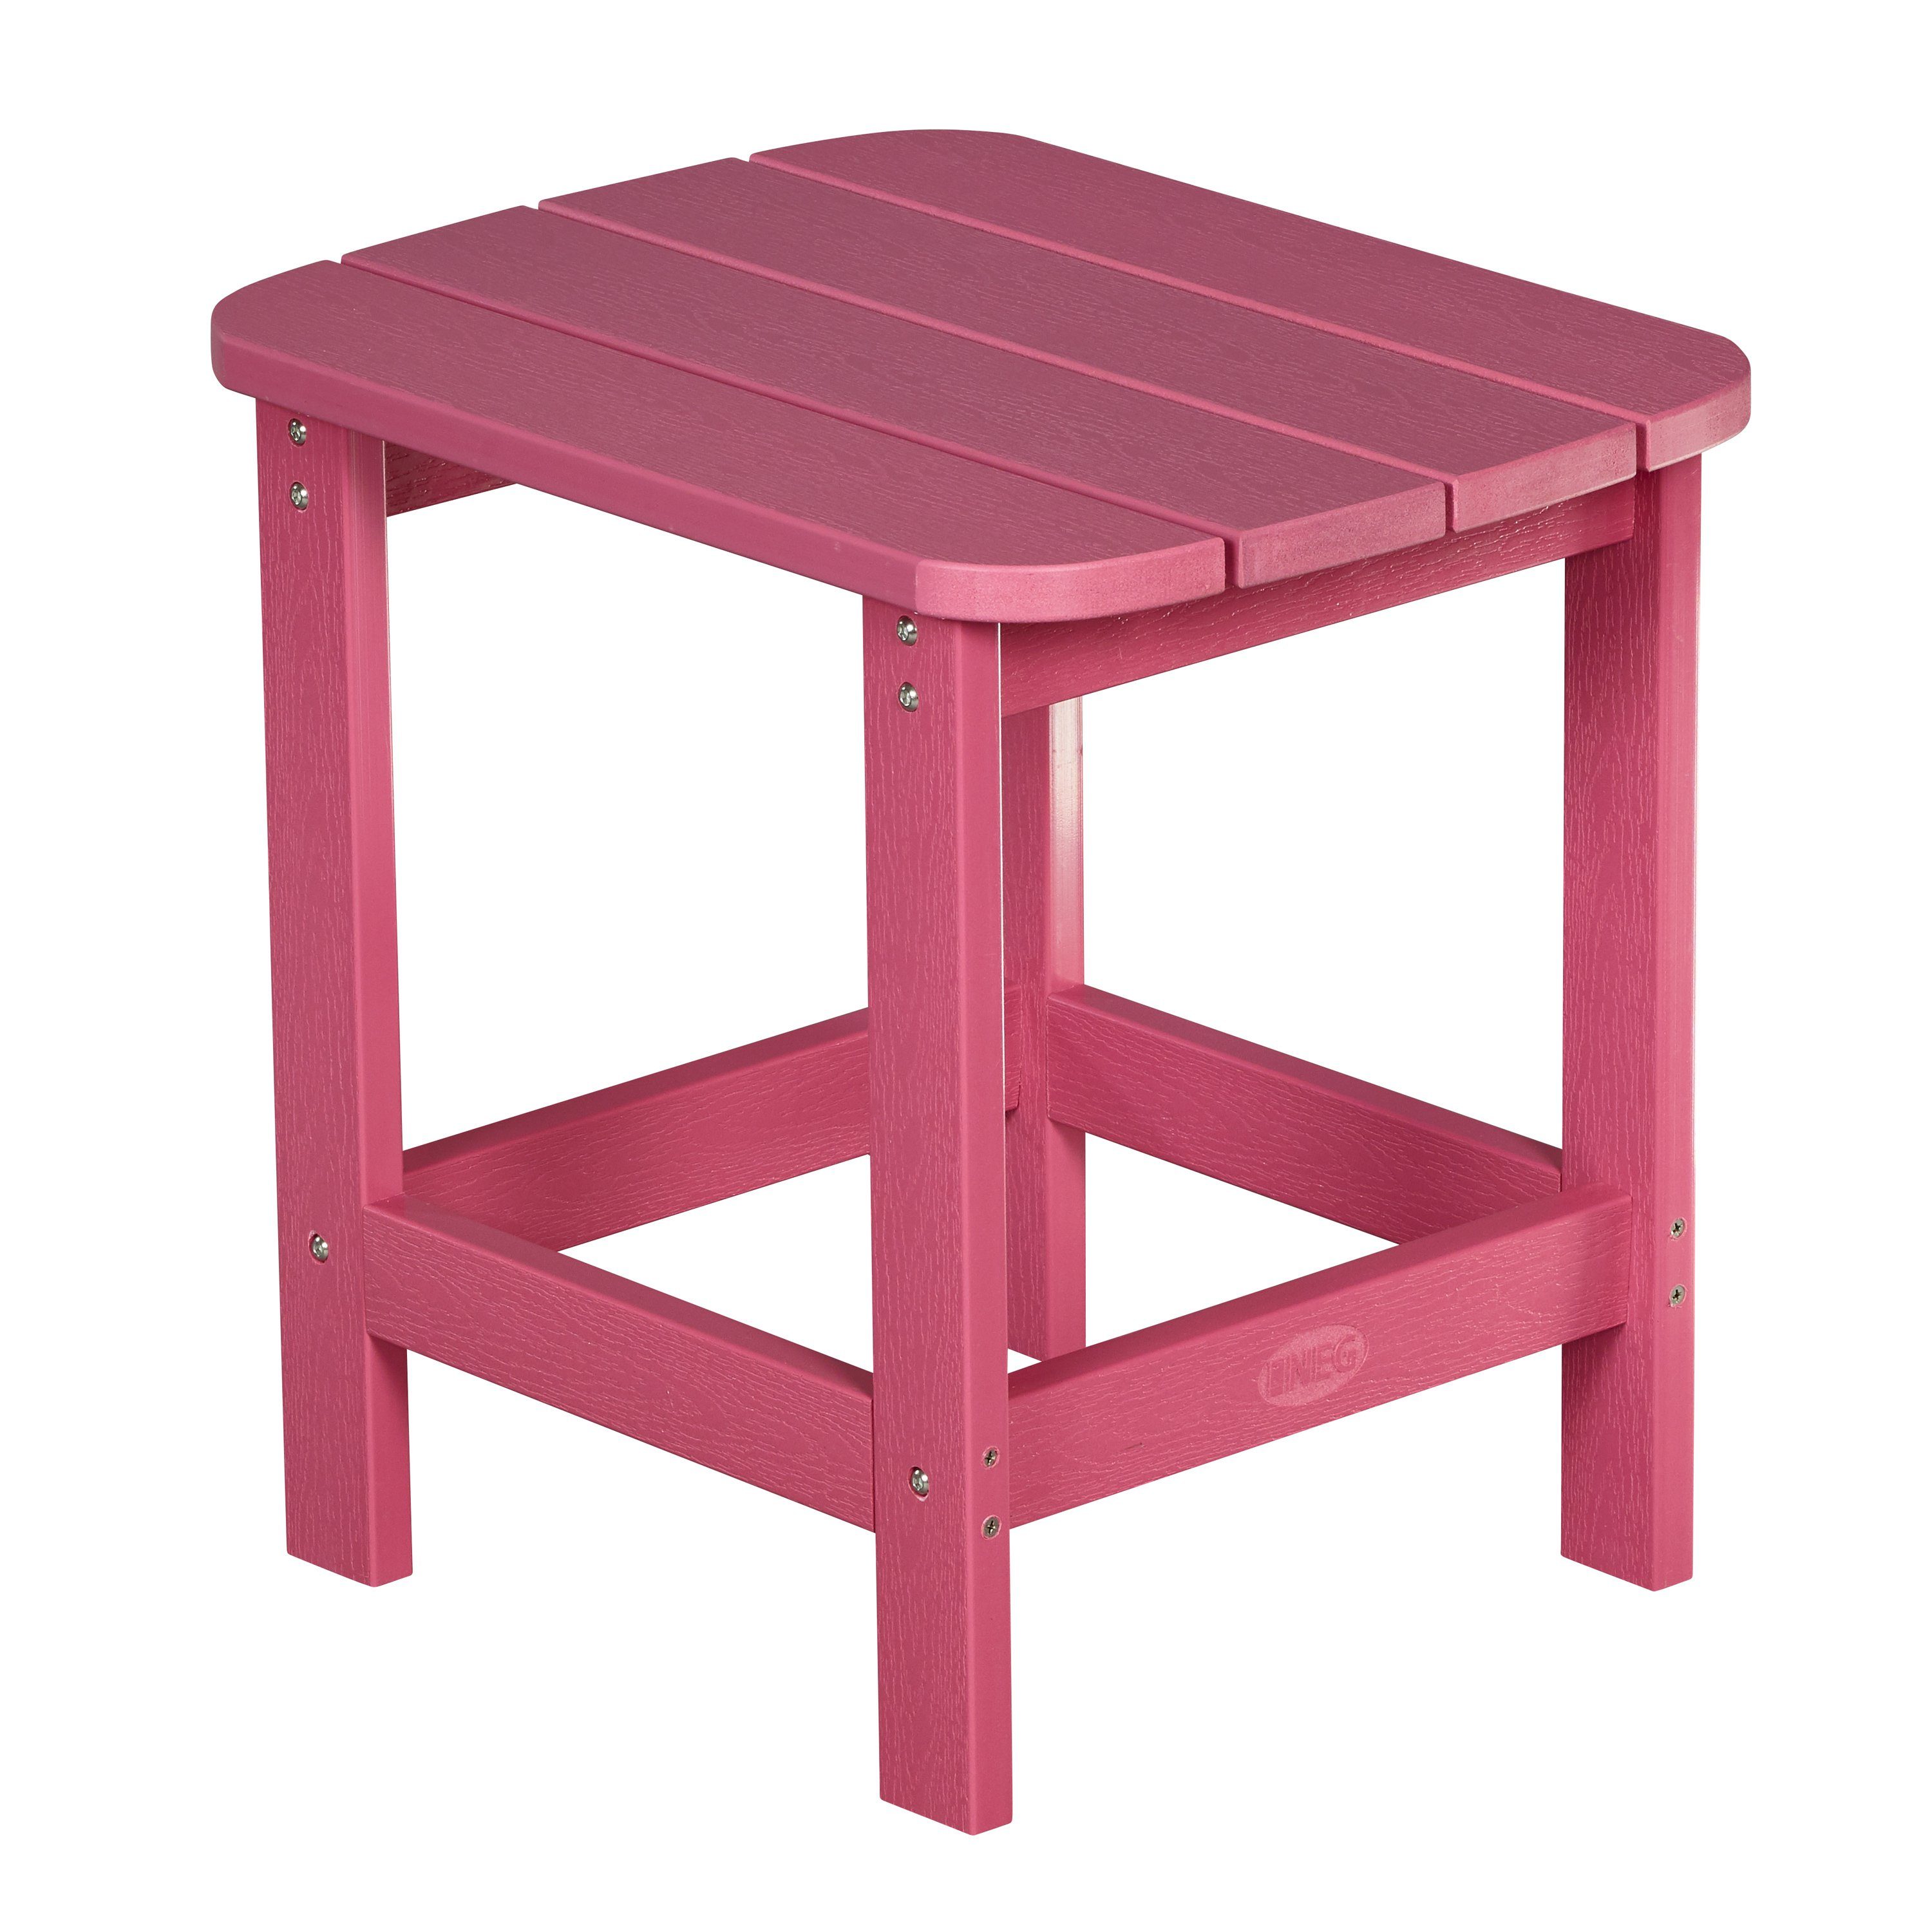 NEG Gartenstuhl NEG Adirondack Tisch/Beistelltisch MARCY pink